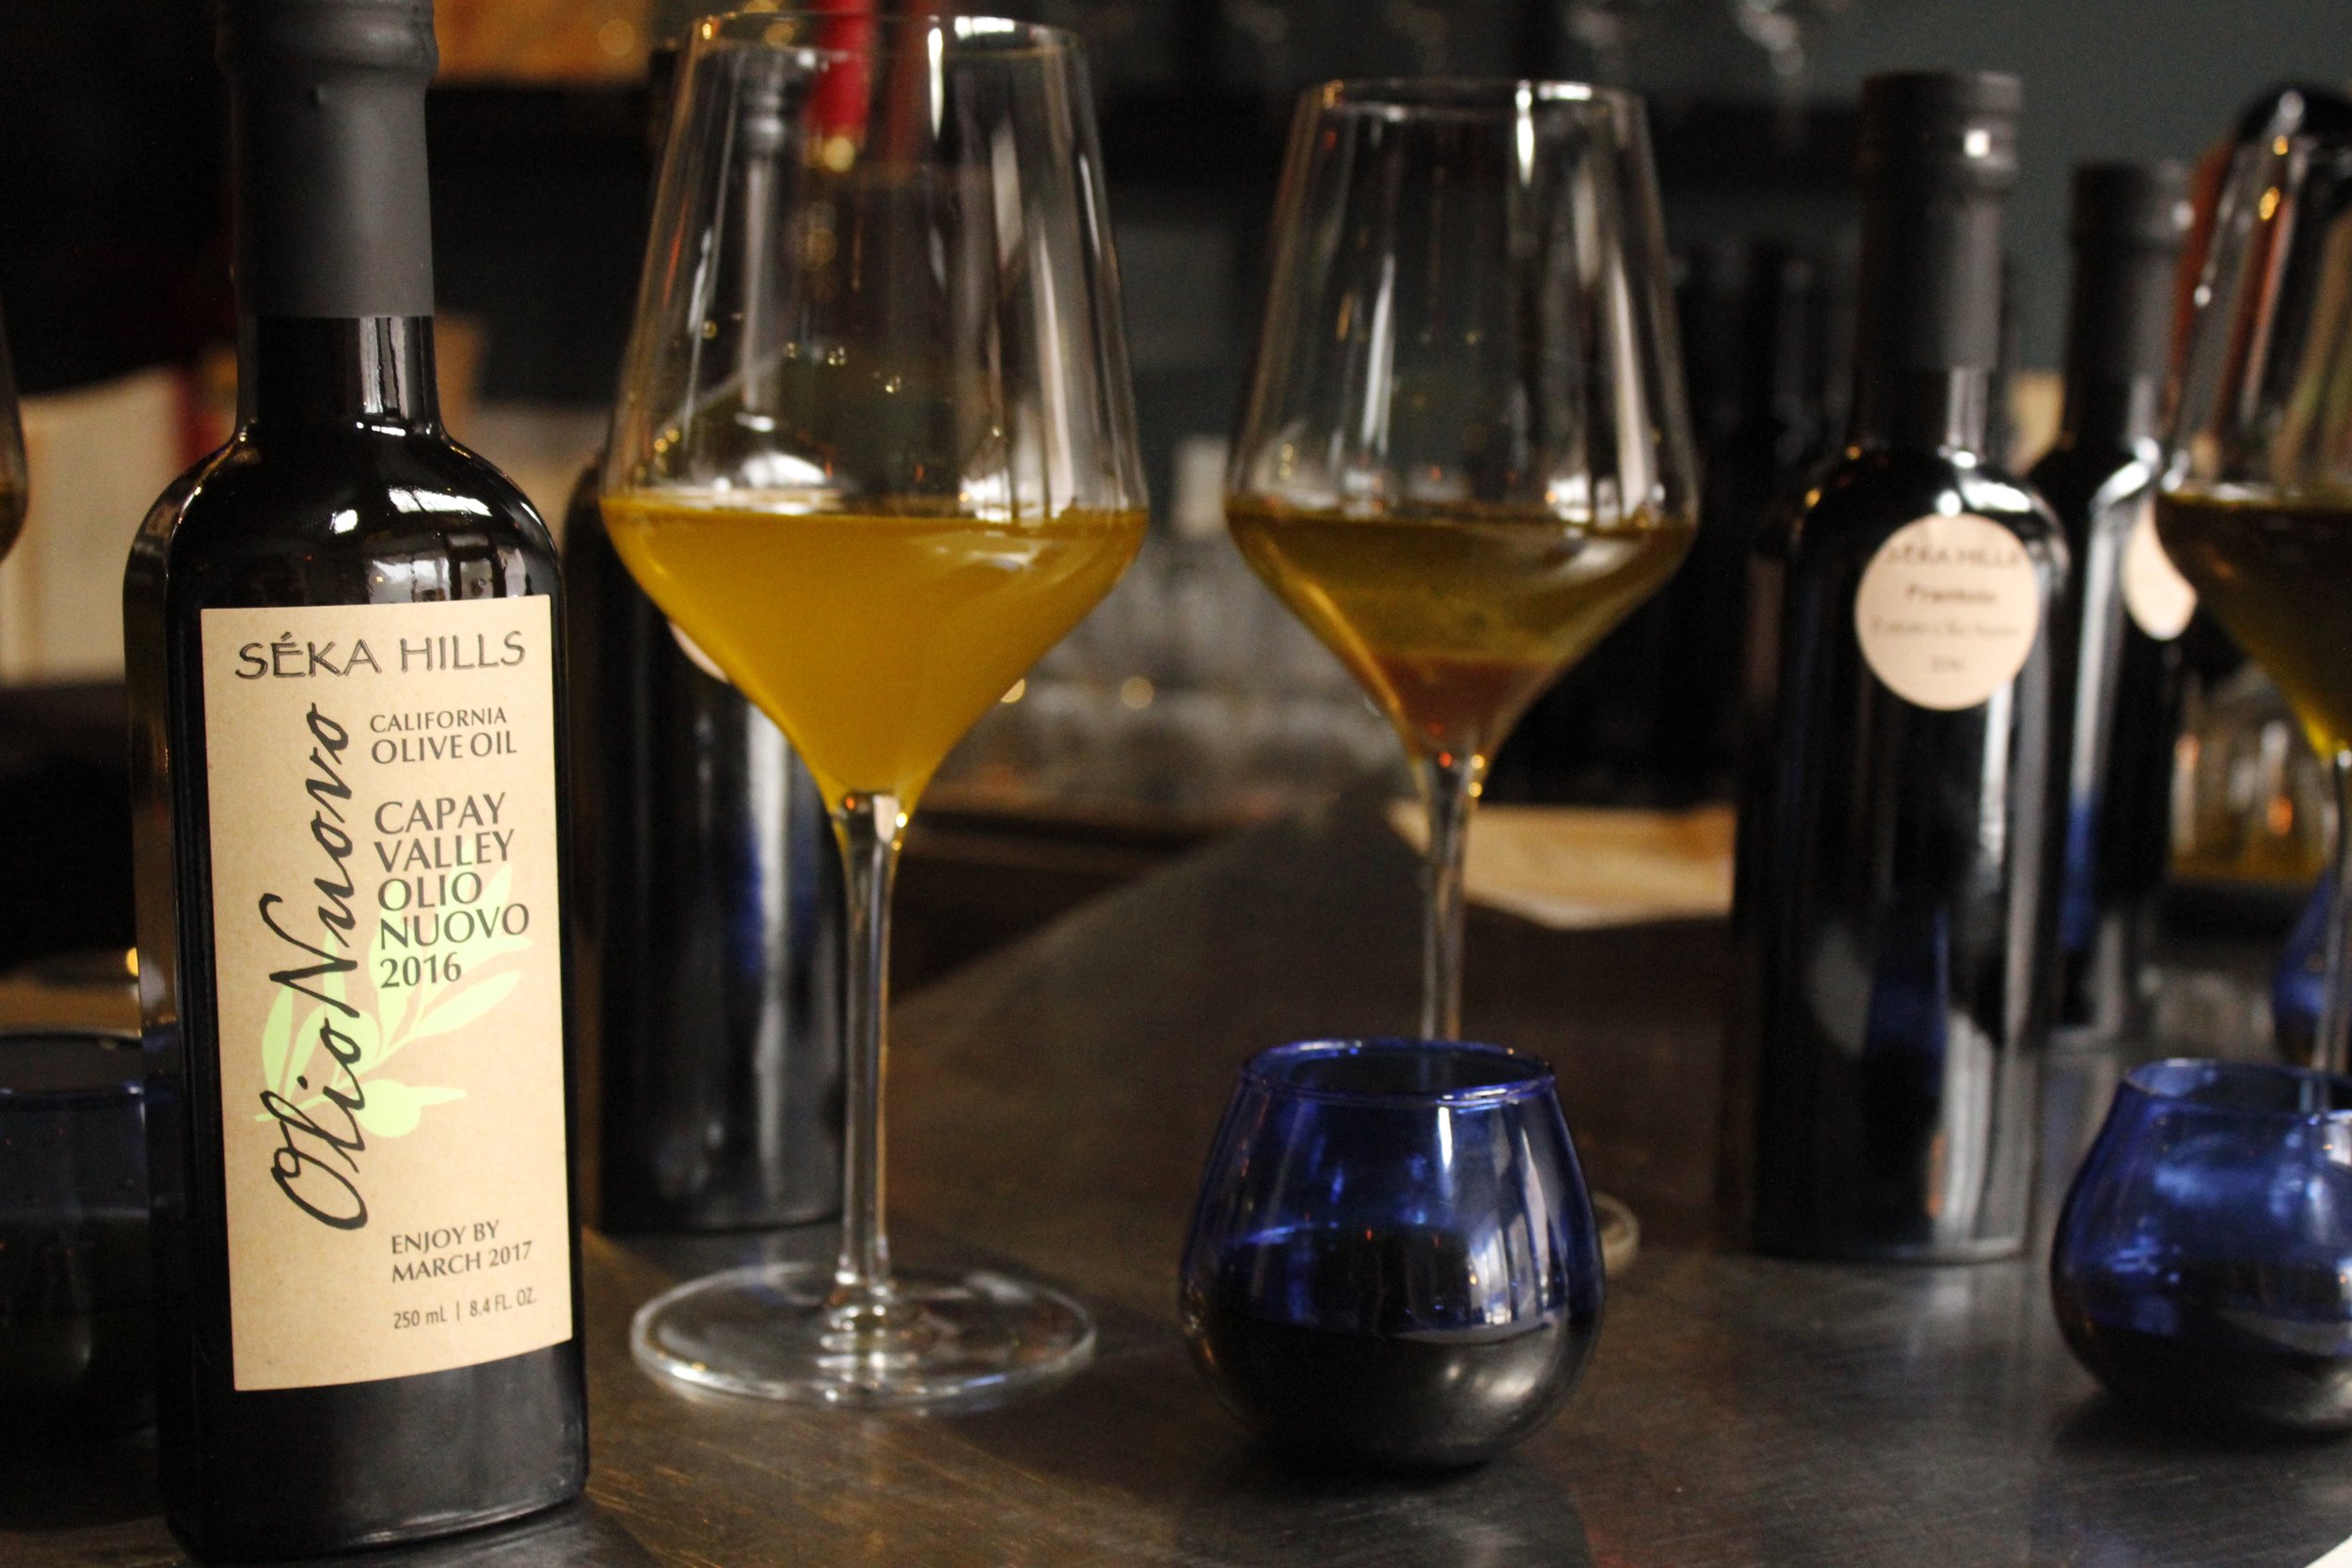  olive oil in wine glasses 